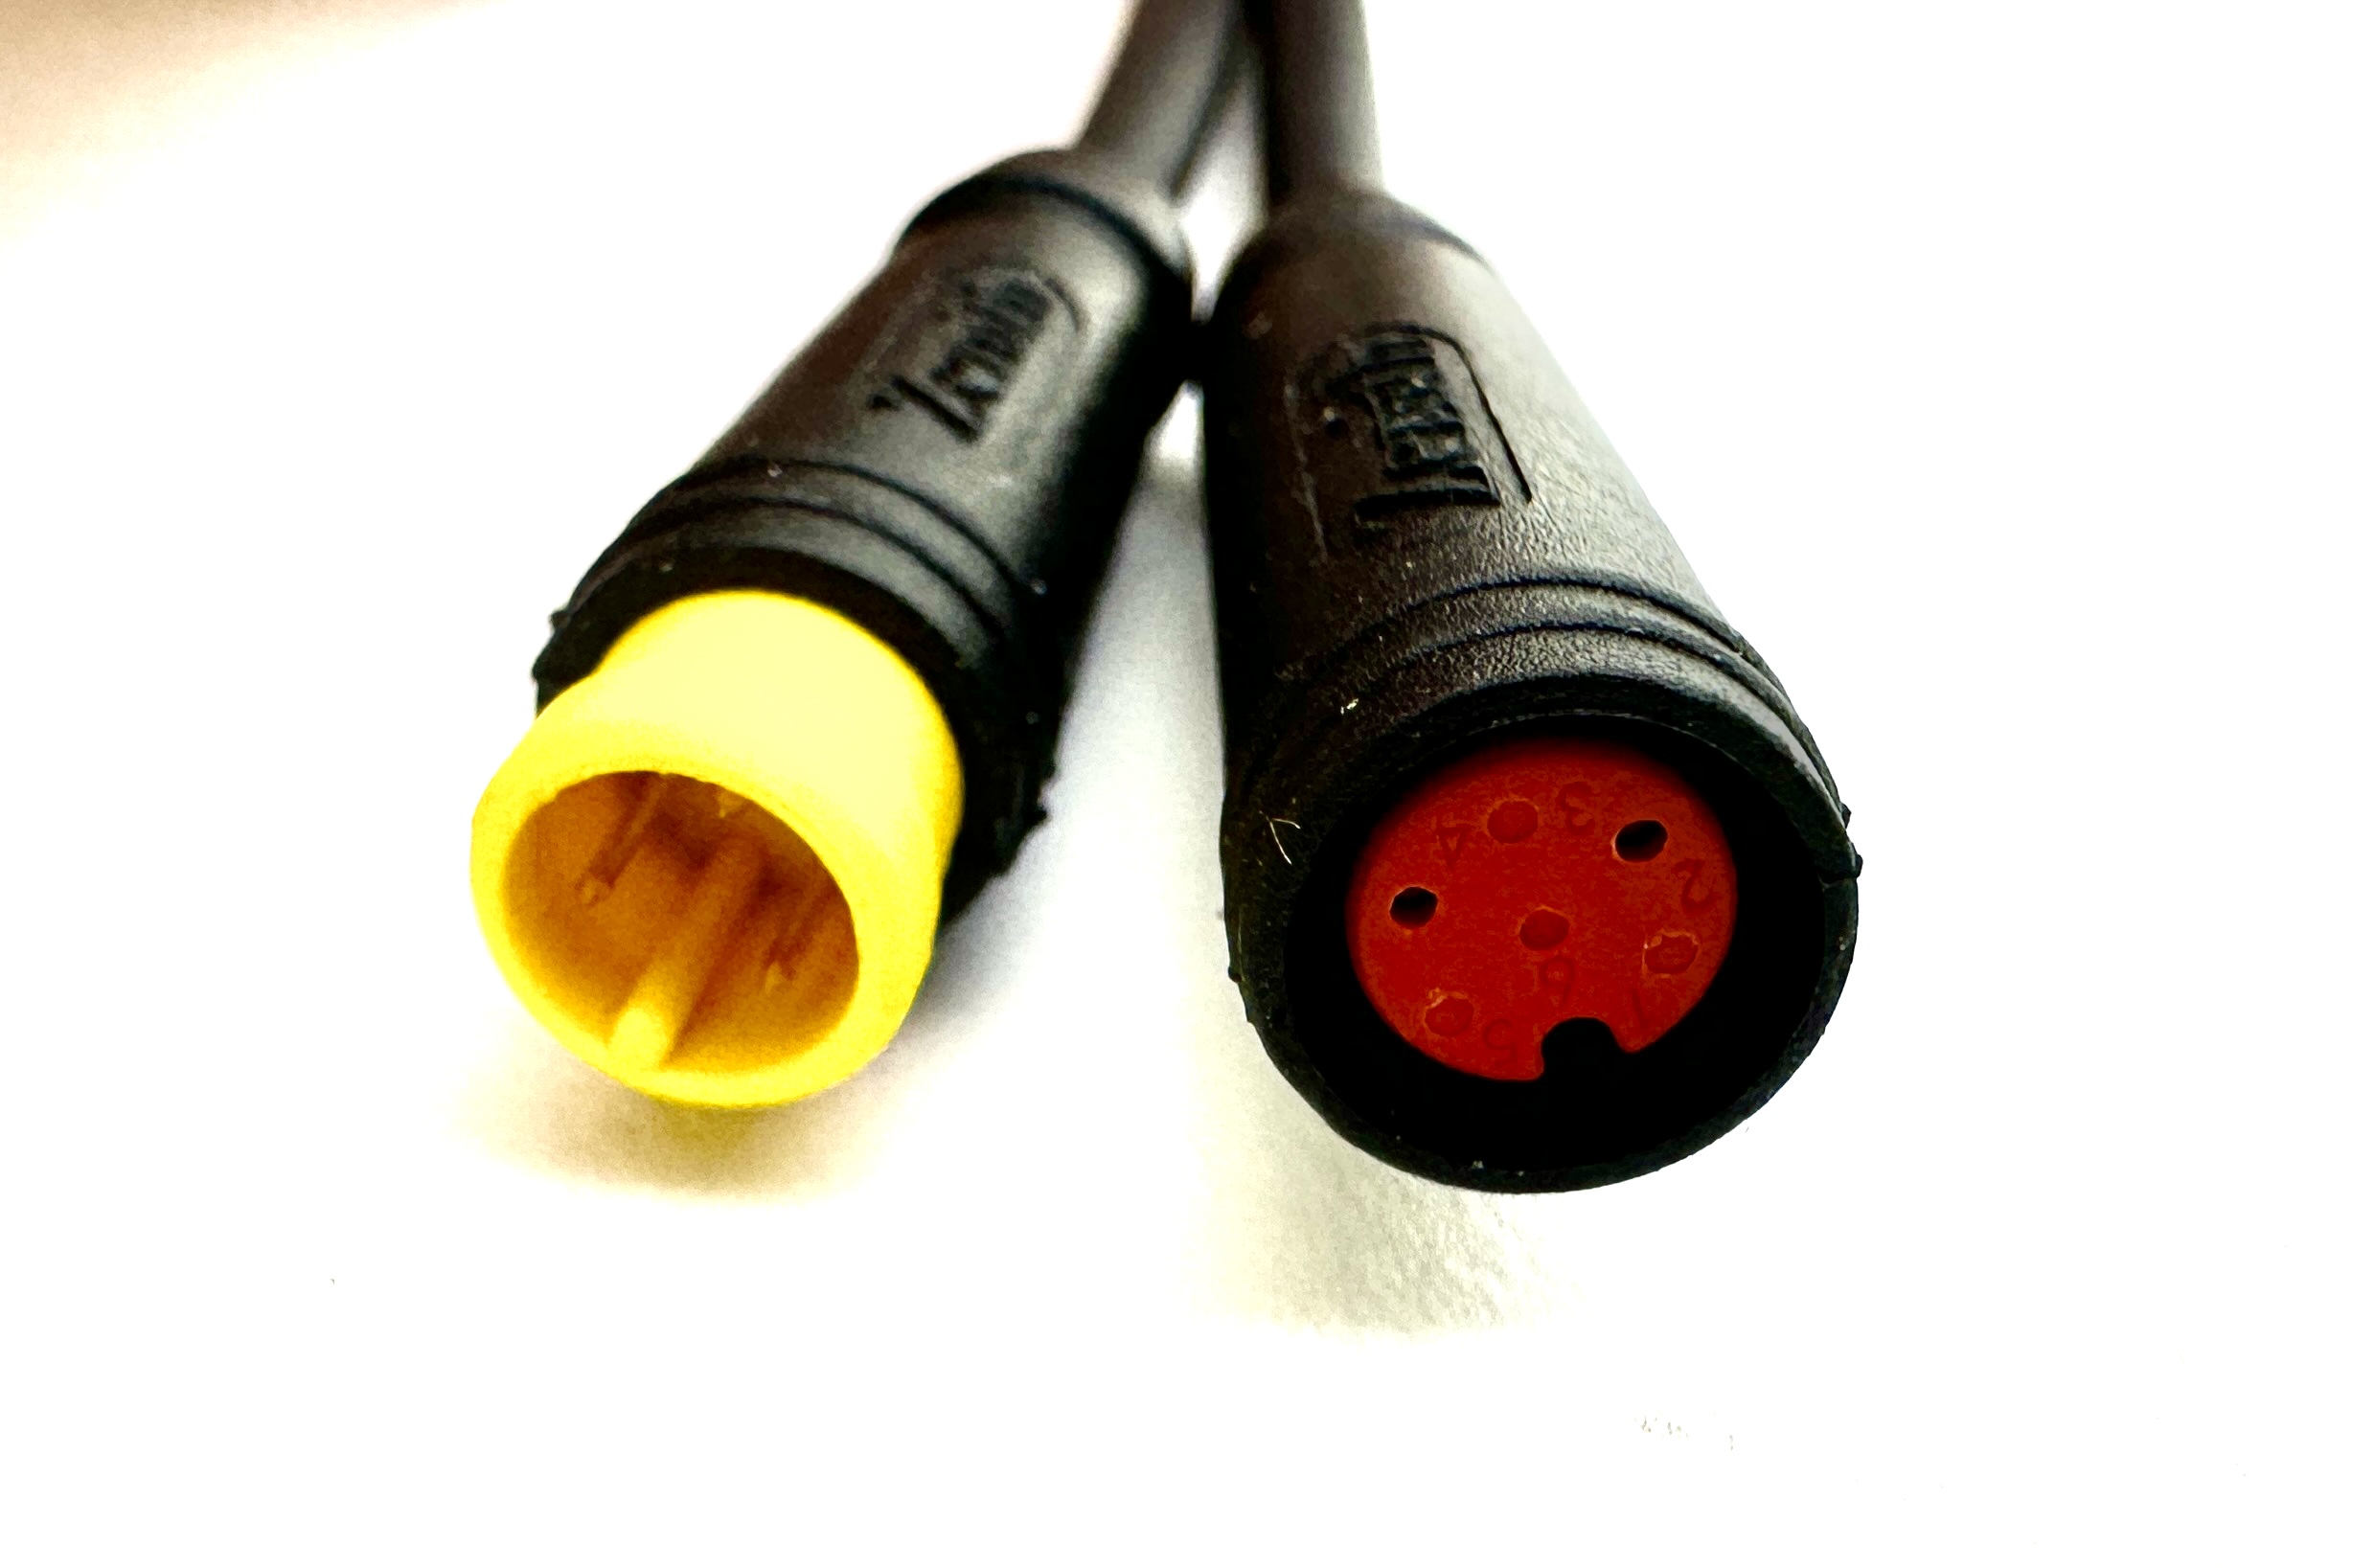 HIGO / Julet Adapterkabel 19,5 cm für Ebike, 2 PIN rot auf 3 PIN gelb